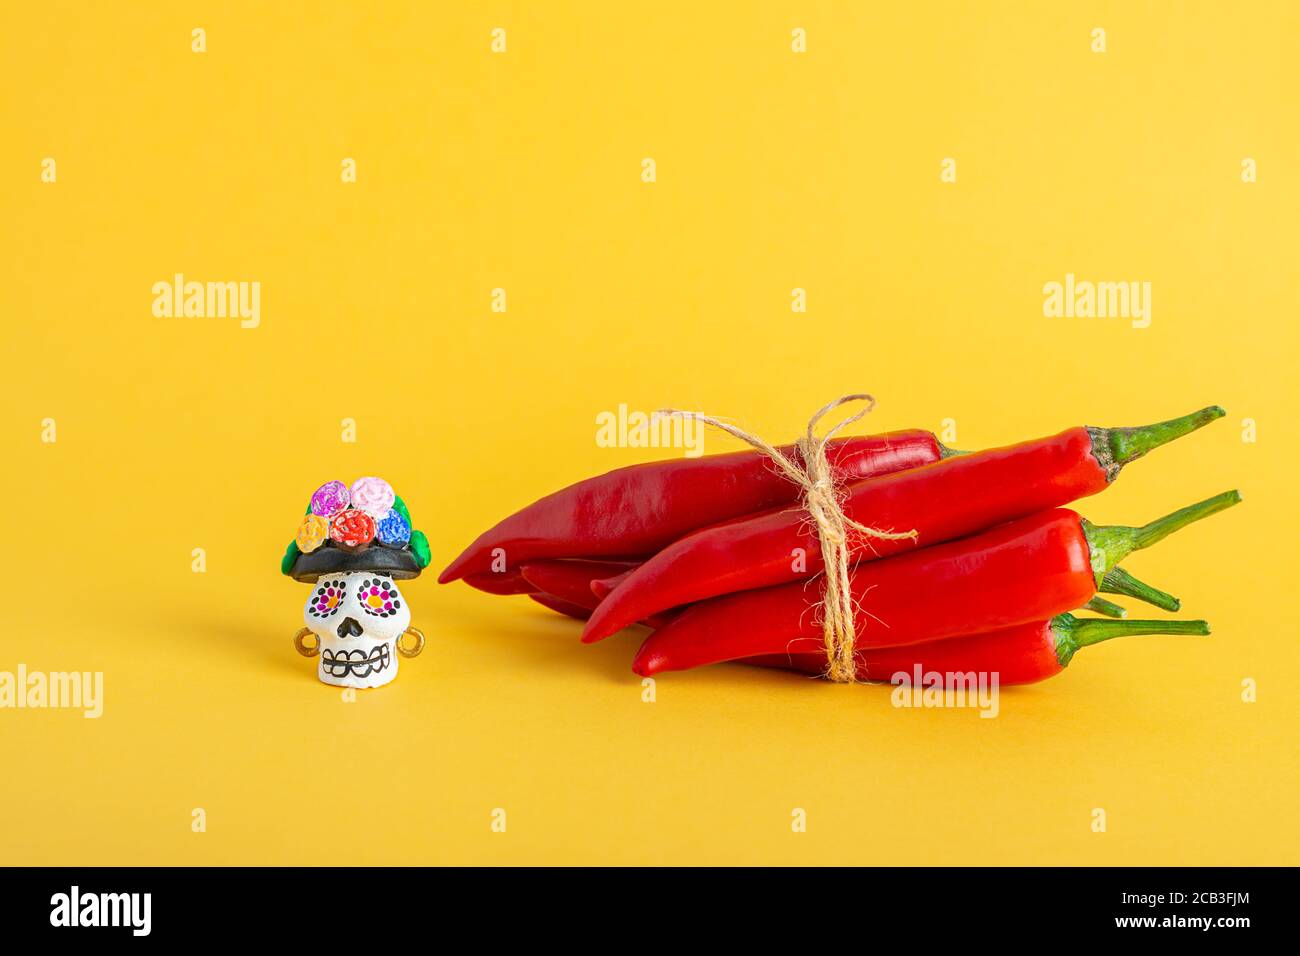 Pimiento rojo picante y Catrina la Calavera Garbancera, Dapper Skeleton, elegante cráneo Foto de stock